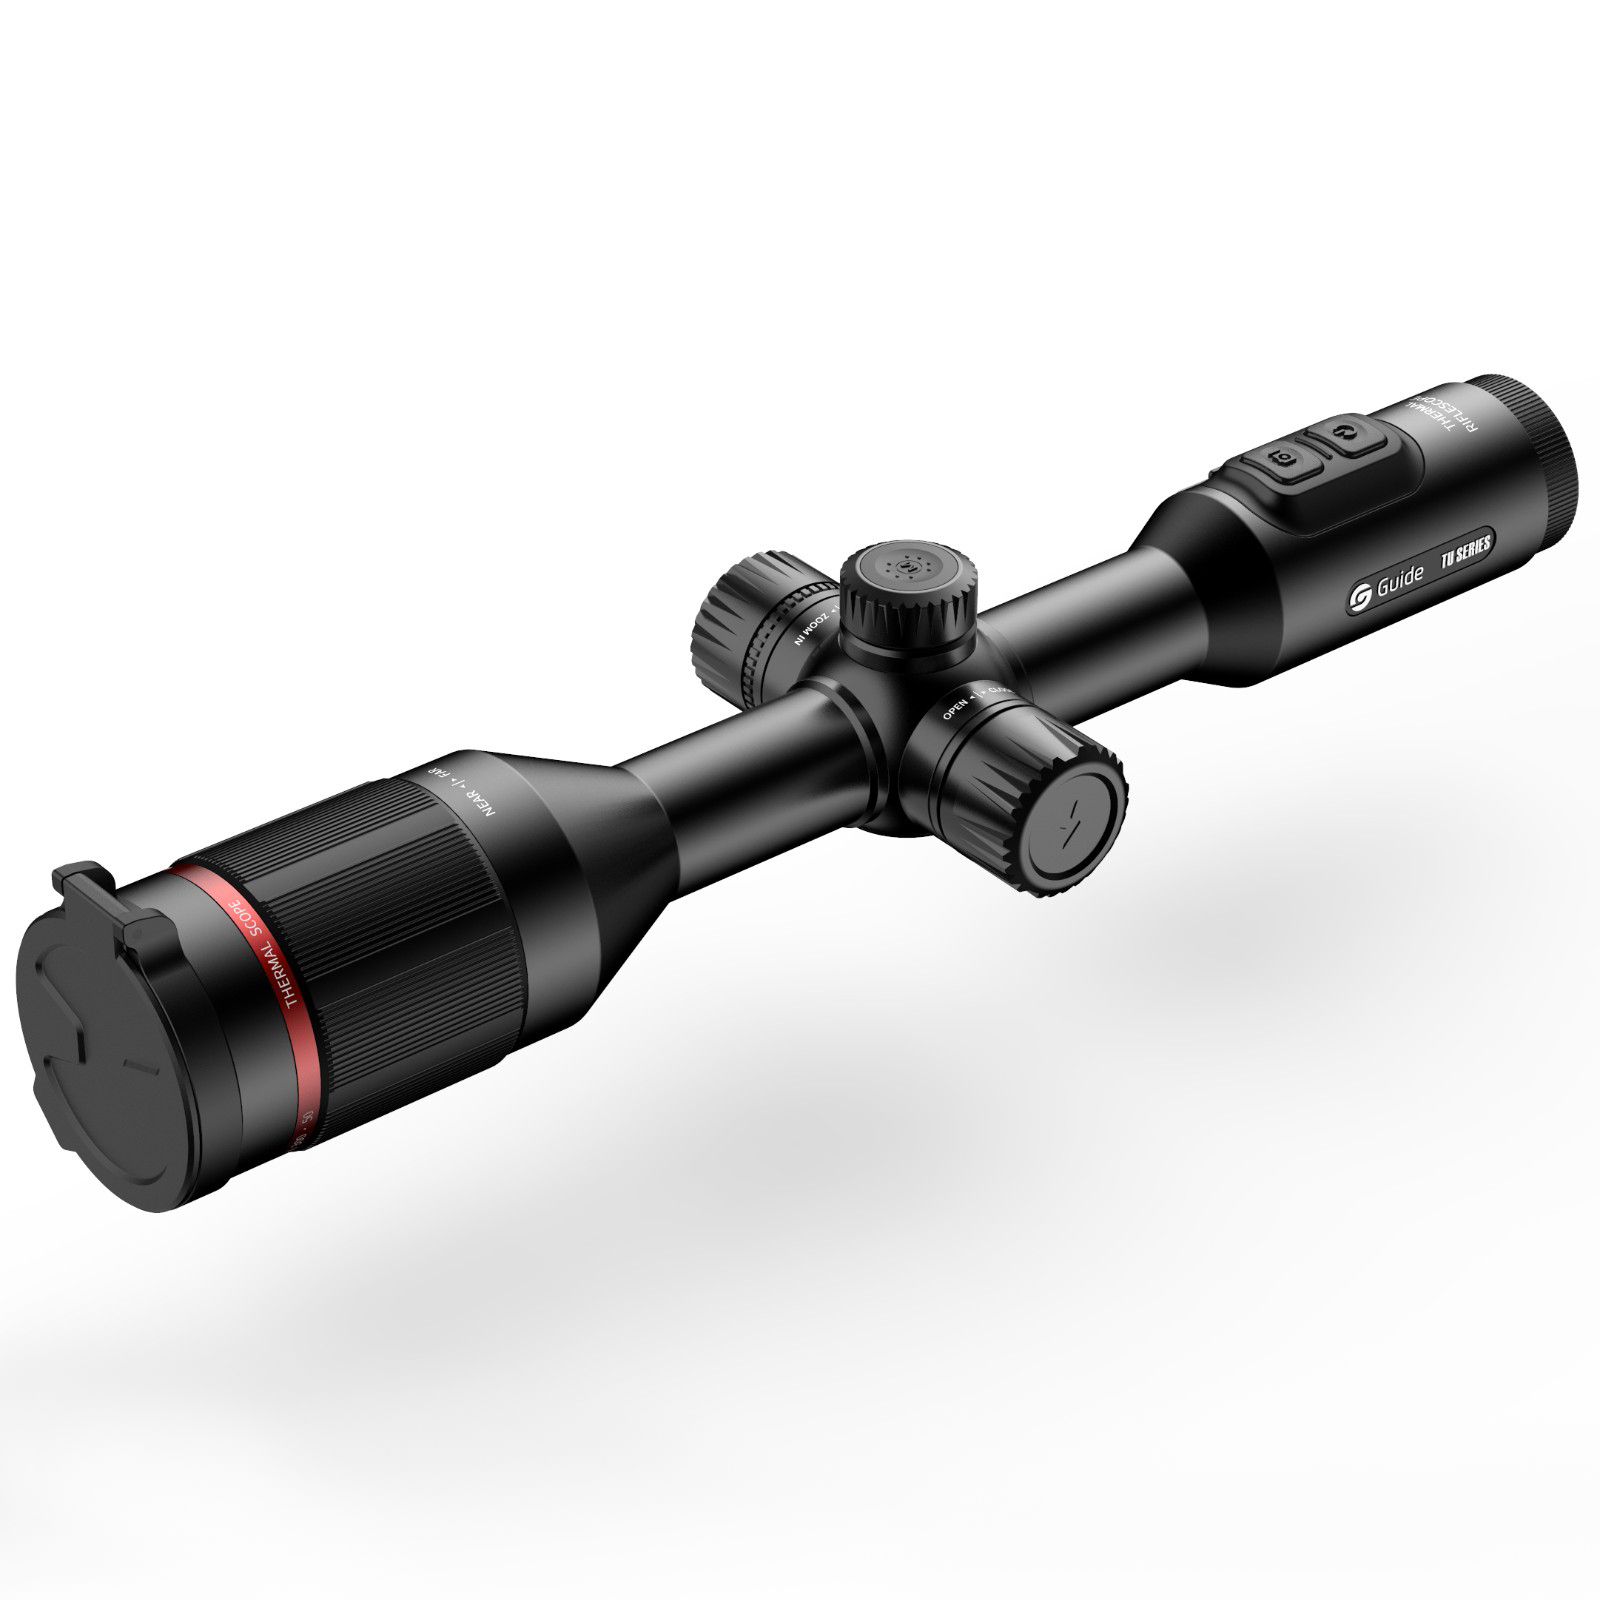 高德智感TU430瞄准镜式红外热像仪图片